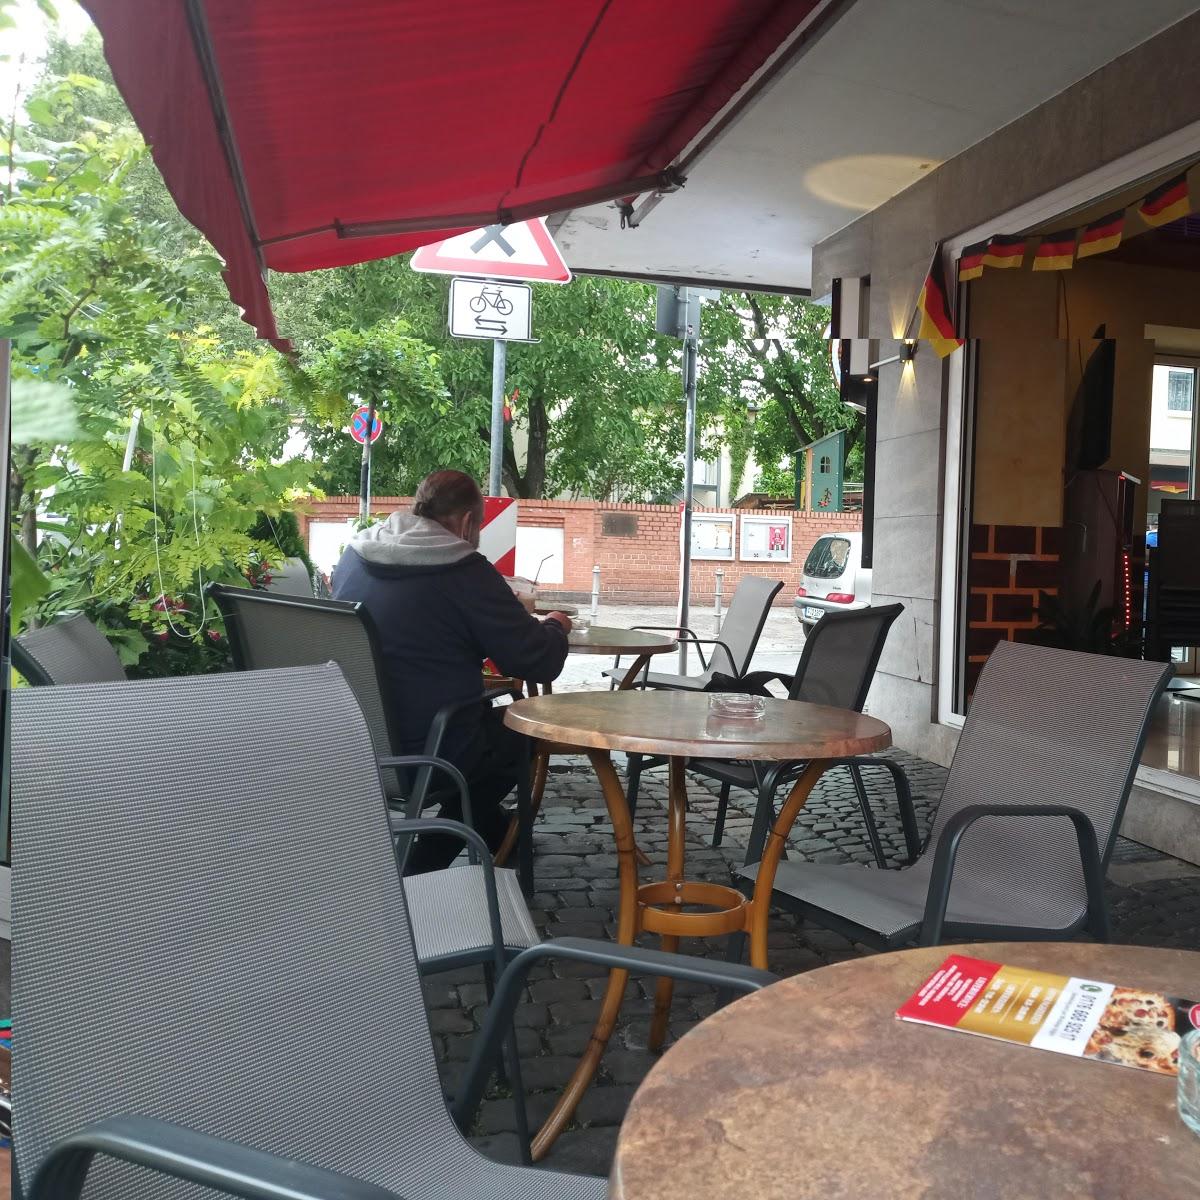 Restaurant "Cafe Alt Schwanheim" in Frankfurt am Main